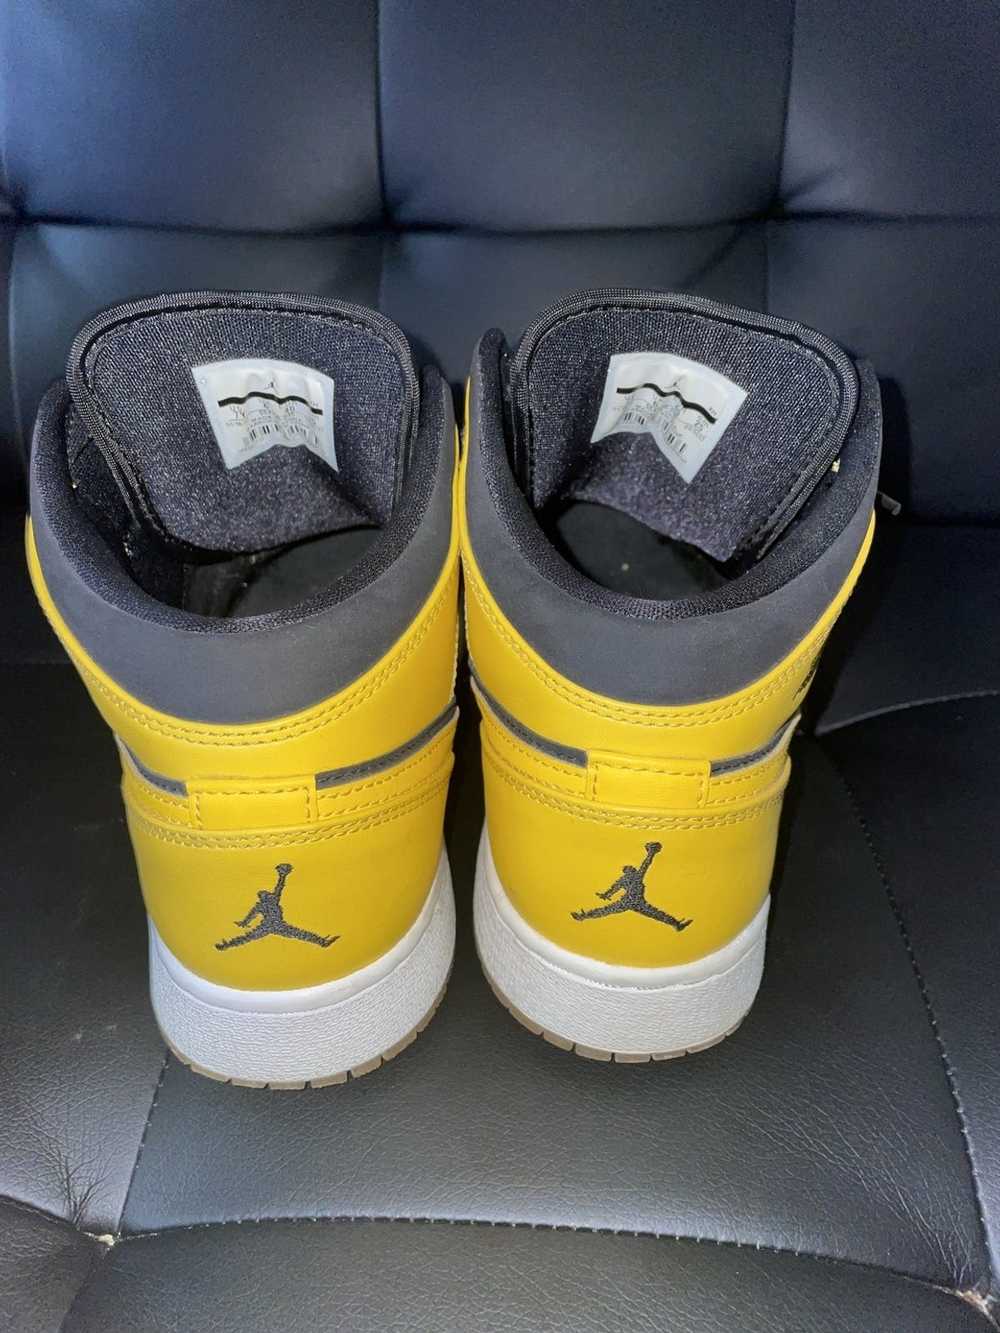 Jordan Brand Jordan 1 Black and yellow mid - image 3